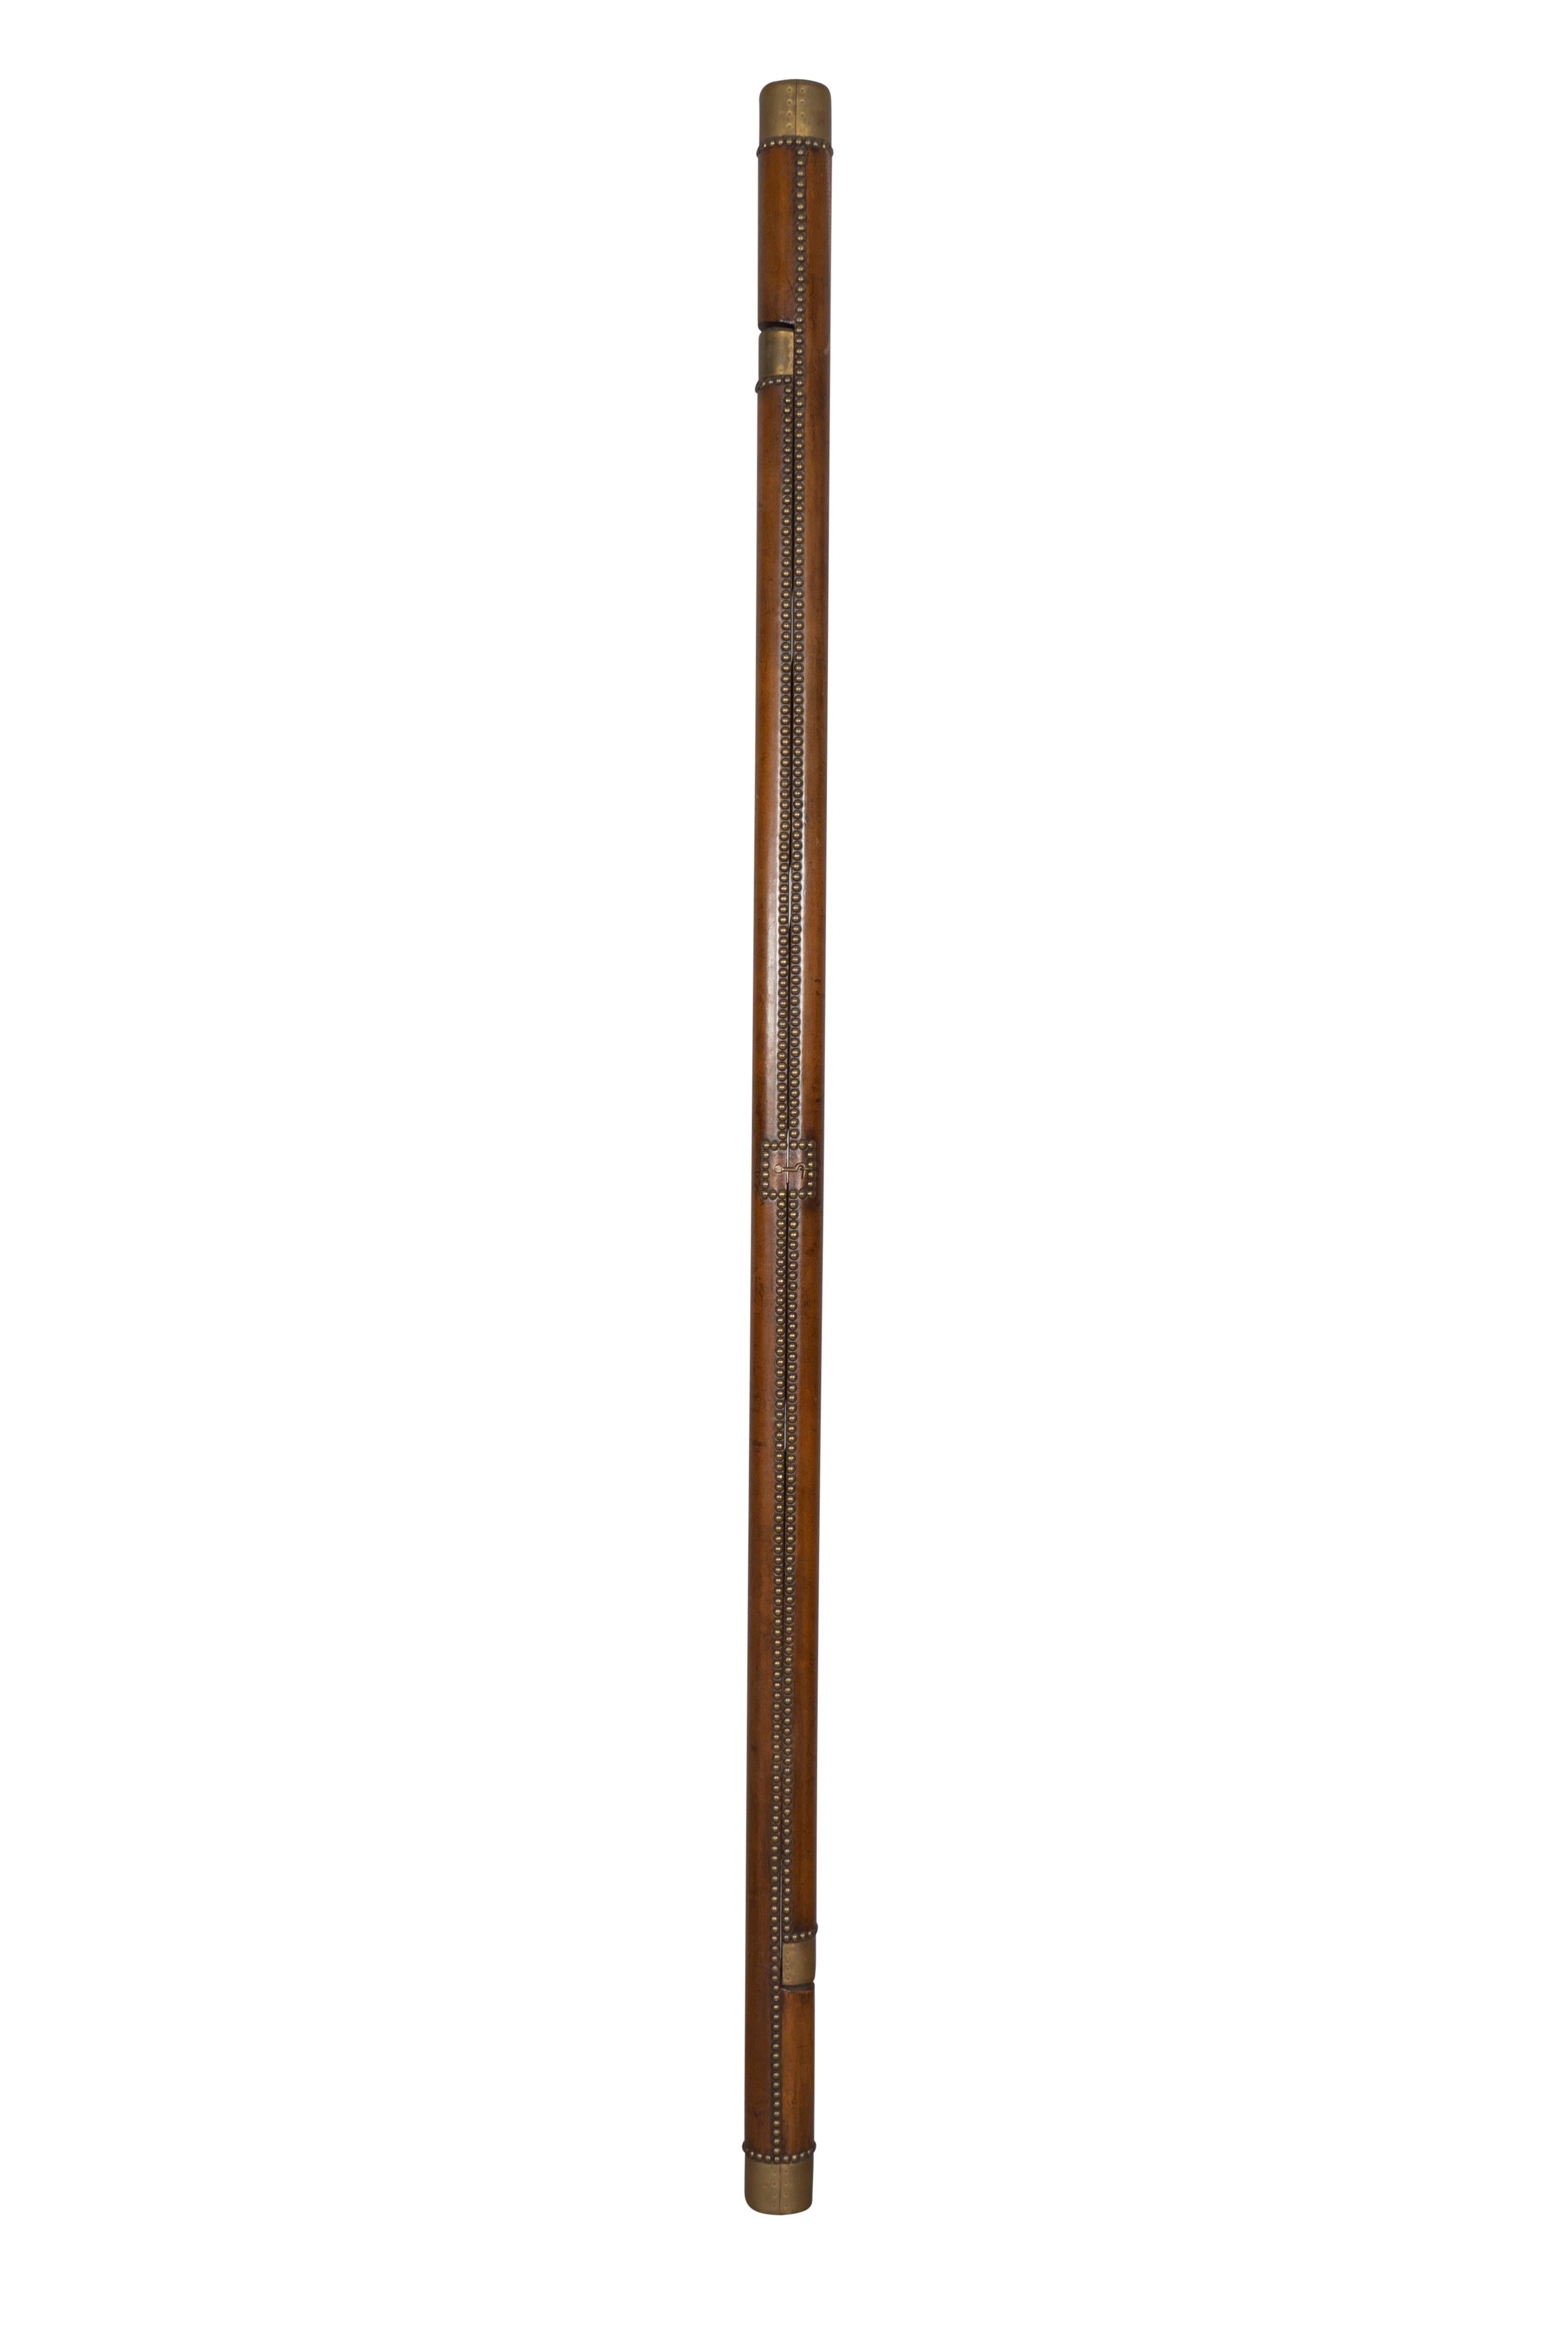 Se plie en bâton. Noyau de bois recouvert de cuir brun avec des pointes en laiton. Un crochet de verrouillage permet de le maintenir fermé. Lorsqu'elle est fermée, sa hauteur est de 91 pouces. Les échelons ont une largeur de 9,25 pouces.